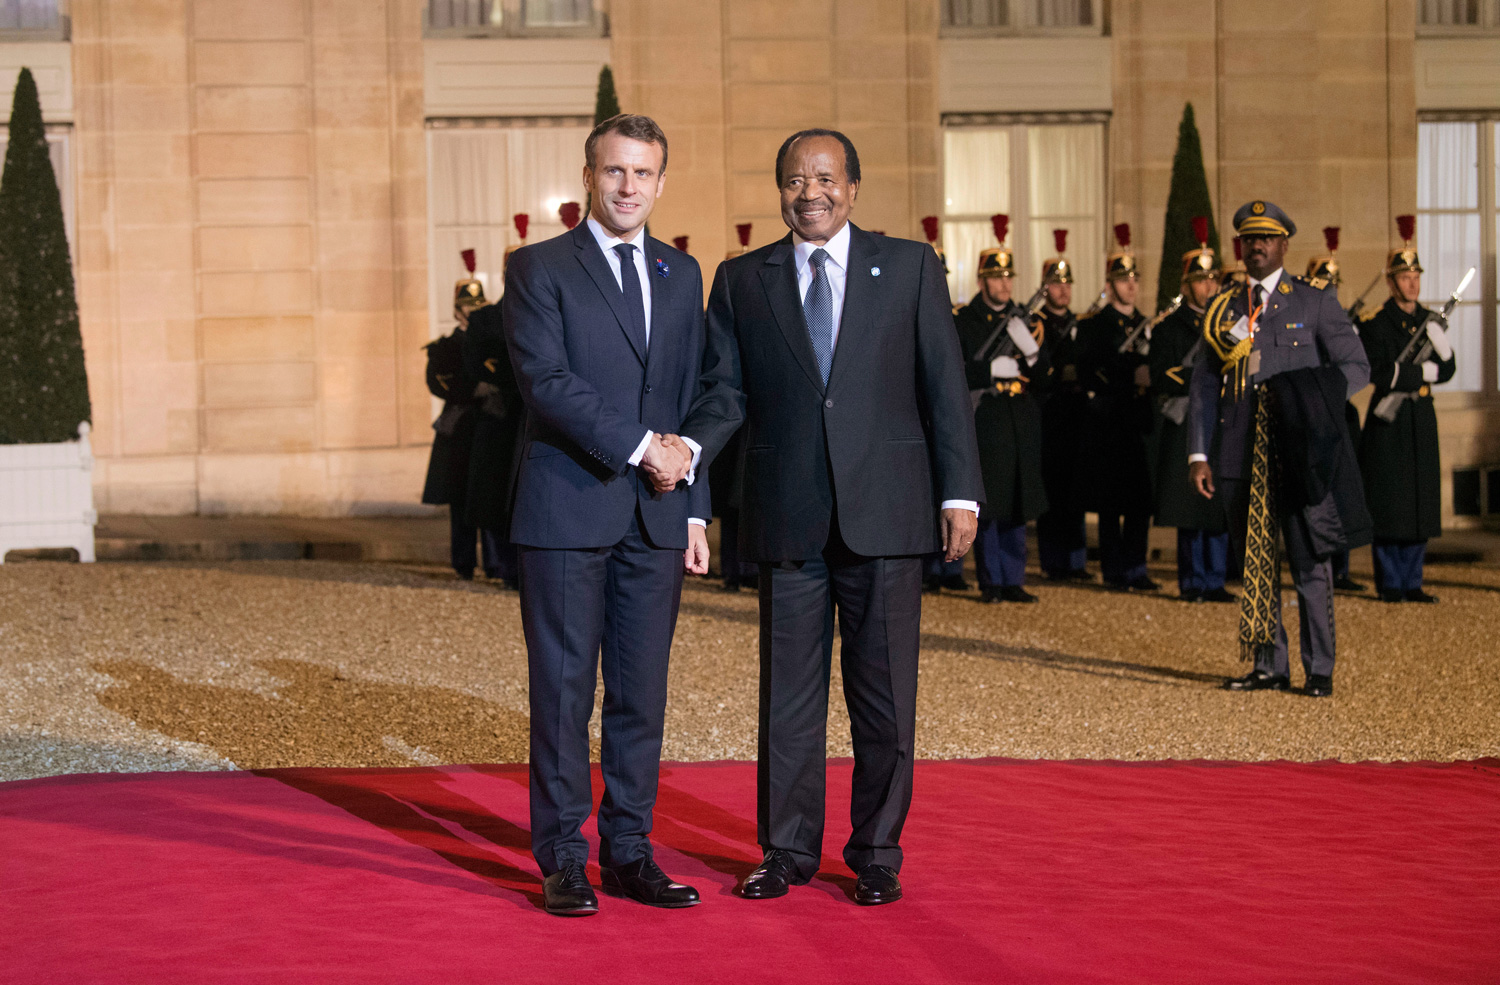 Dîner officiel offert à l'Elysée par le Président Emmanuel MACRON - 11.11.2019